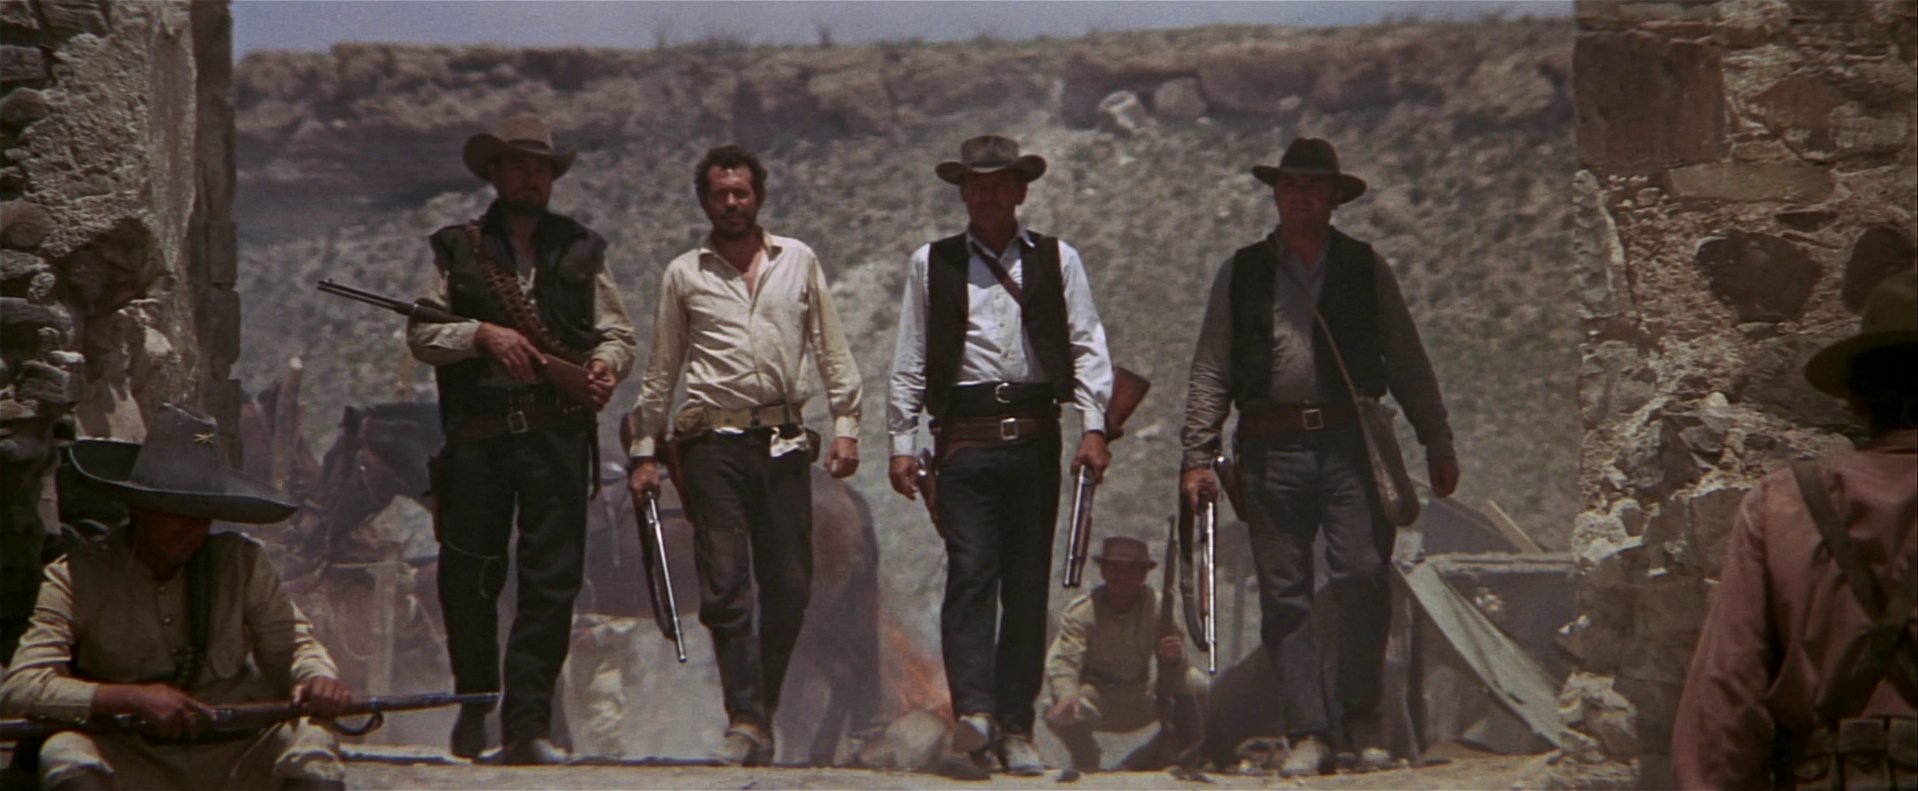 Ben Johnson, Warren Oates, William Holden und Ernest Borgnine marschieren nebeneinander als bewaffnete Outlaws im Lager der mexikanischen Soldaten.